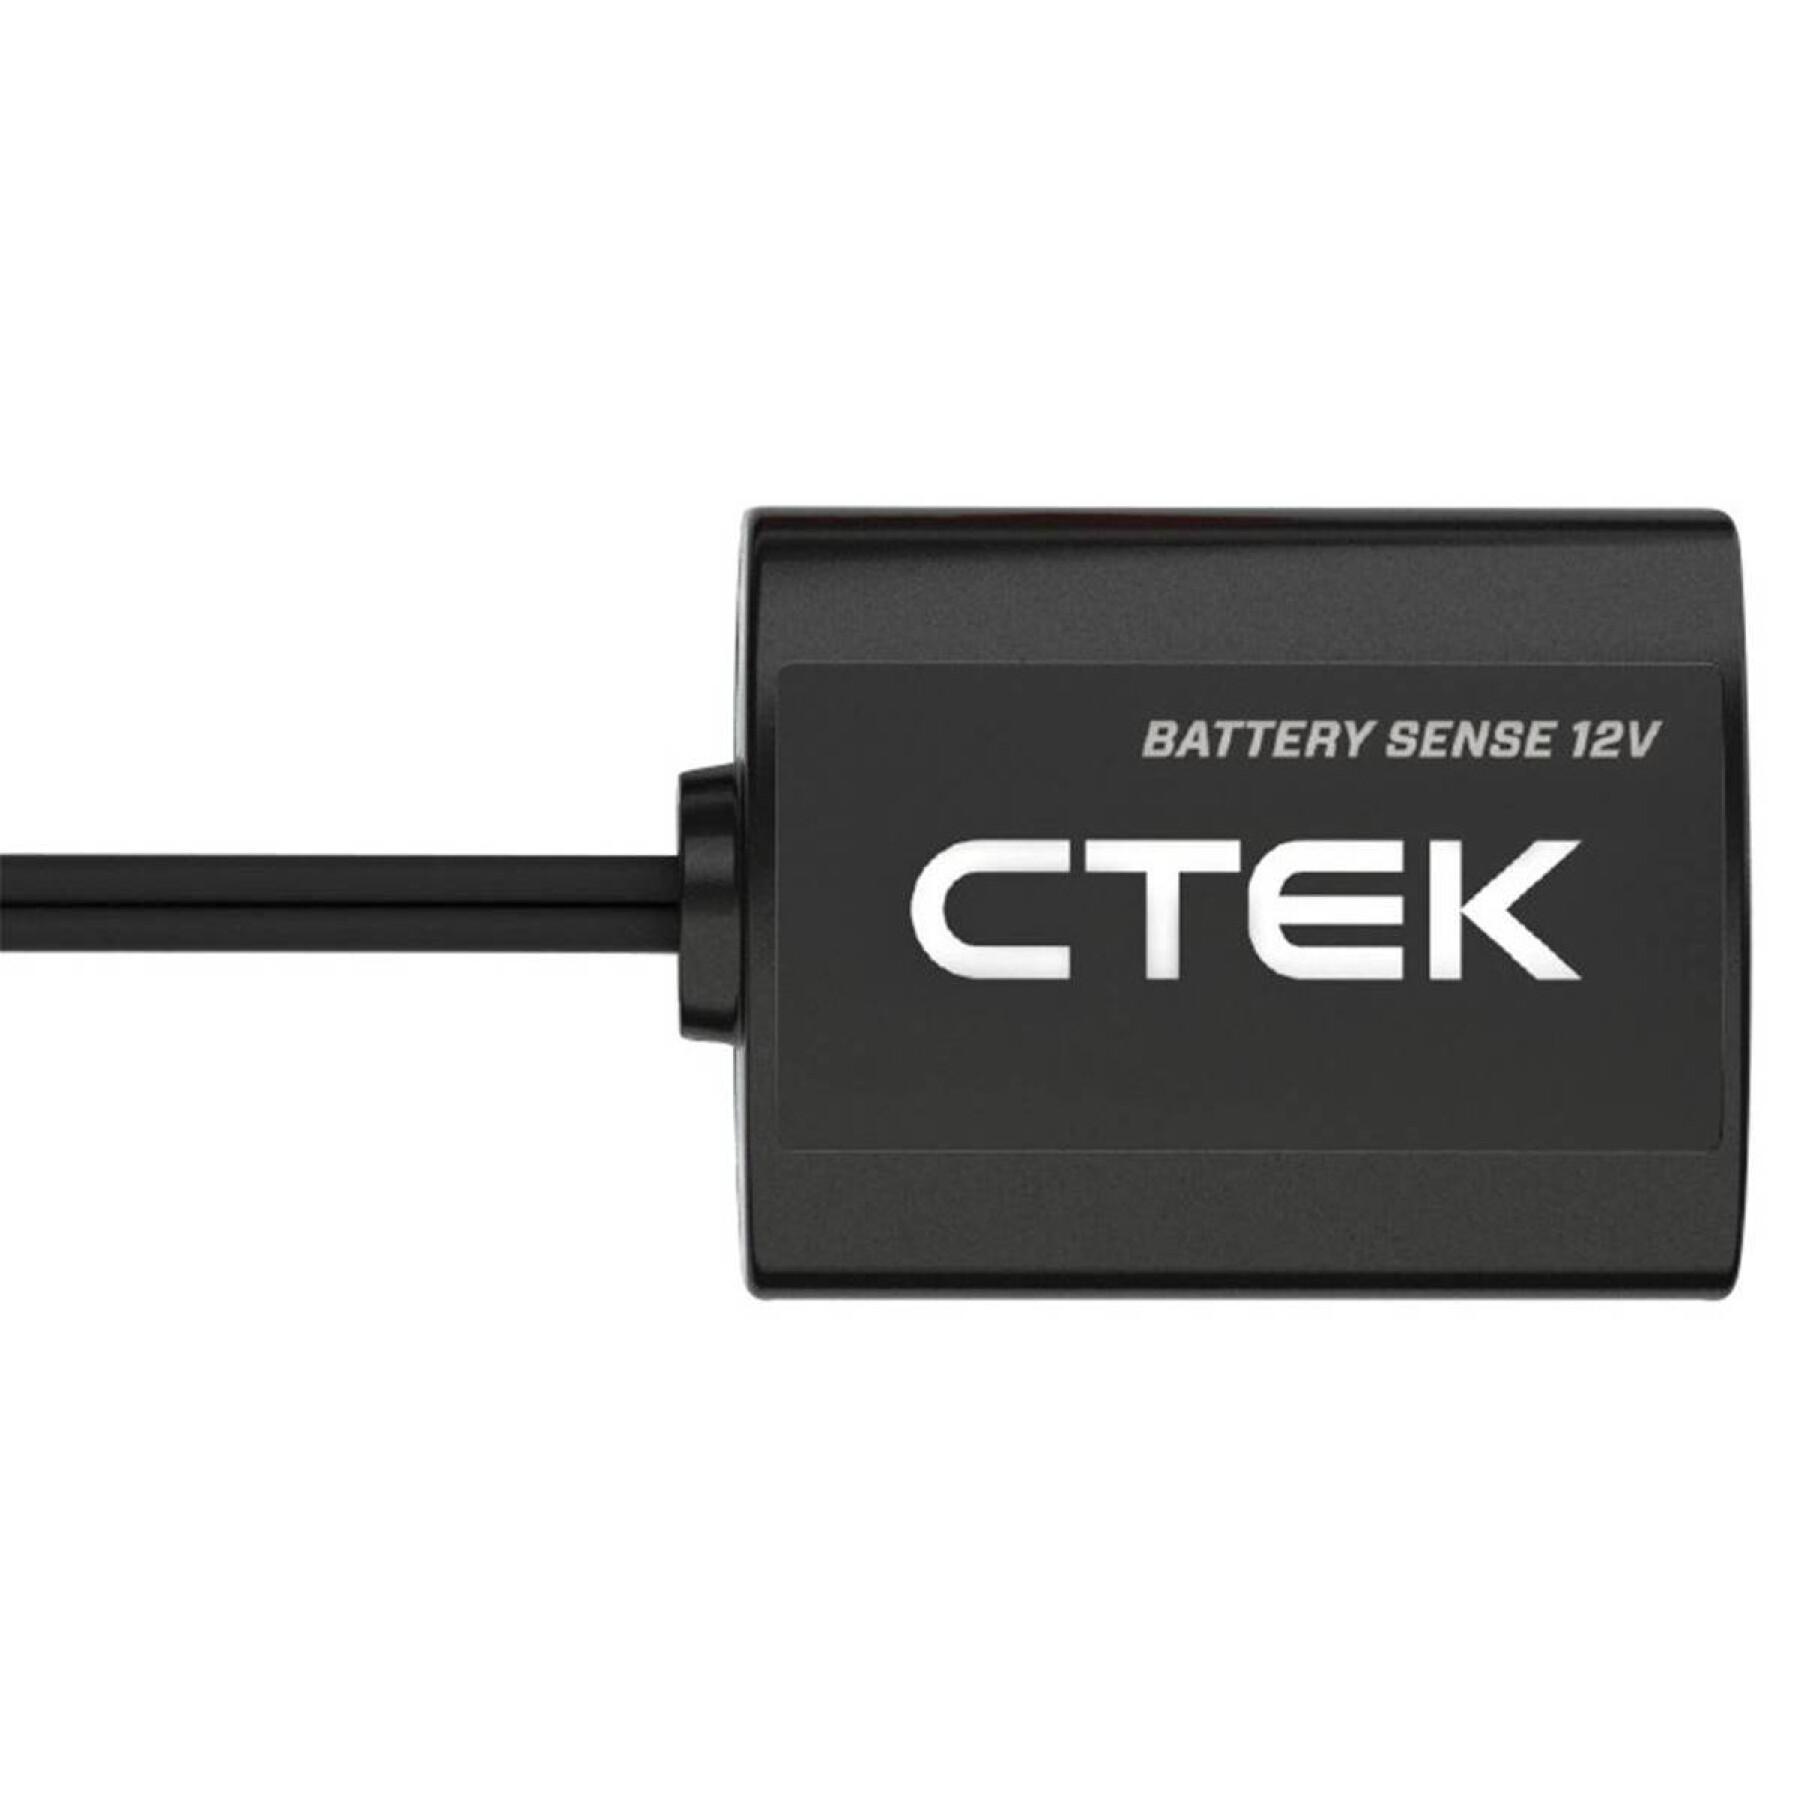 Chargeur de batterie Ctek Sense